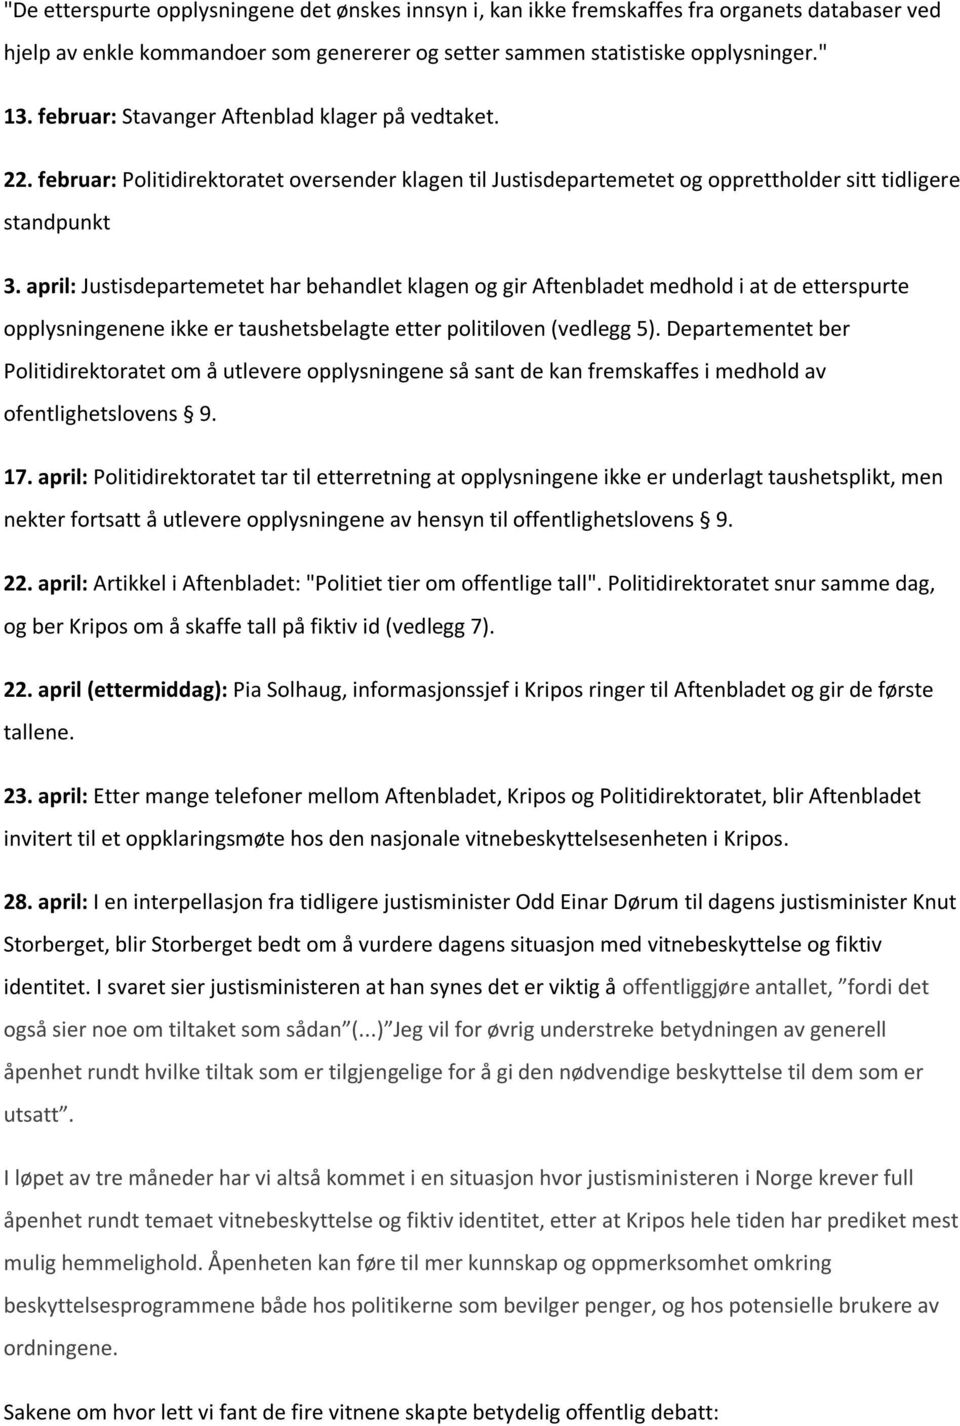 april: Justisdepartemetet har behandlet klagen og gir Aftenbladet medhold i at de etterspurte opplysningenene ikke er taushetsbelagte etter politiloven (vedlegg 5).